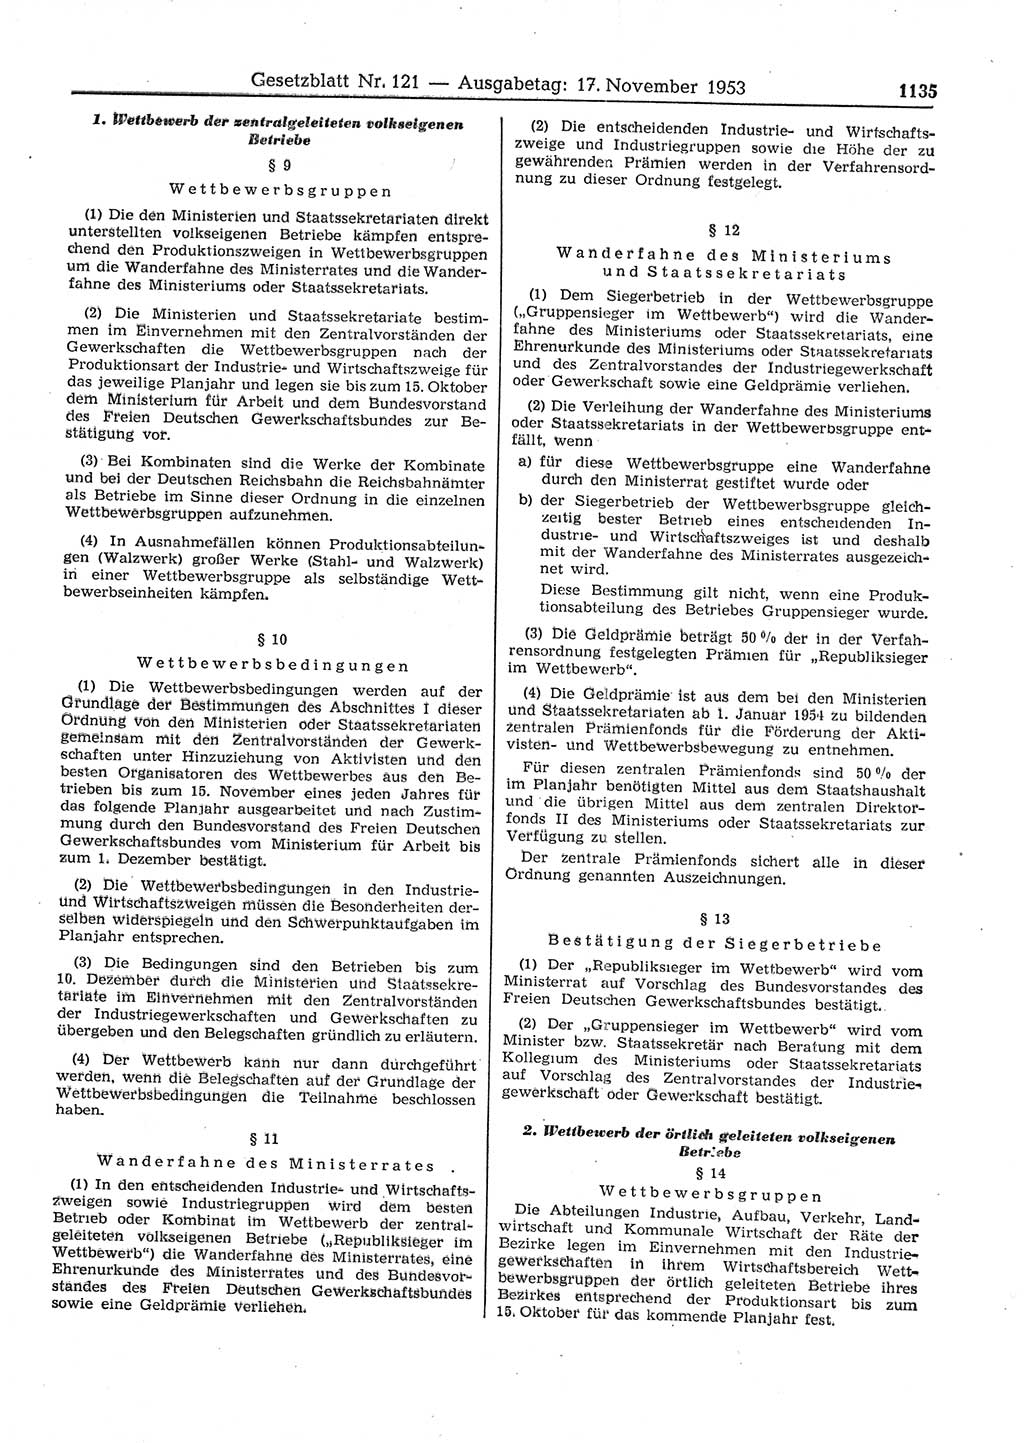 Gesetzblatt (GBl.) der Deutschen Demokratischen Republik (DDR) 1953, Seite 1135 (GBl. DDR 1953, S. 1135)